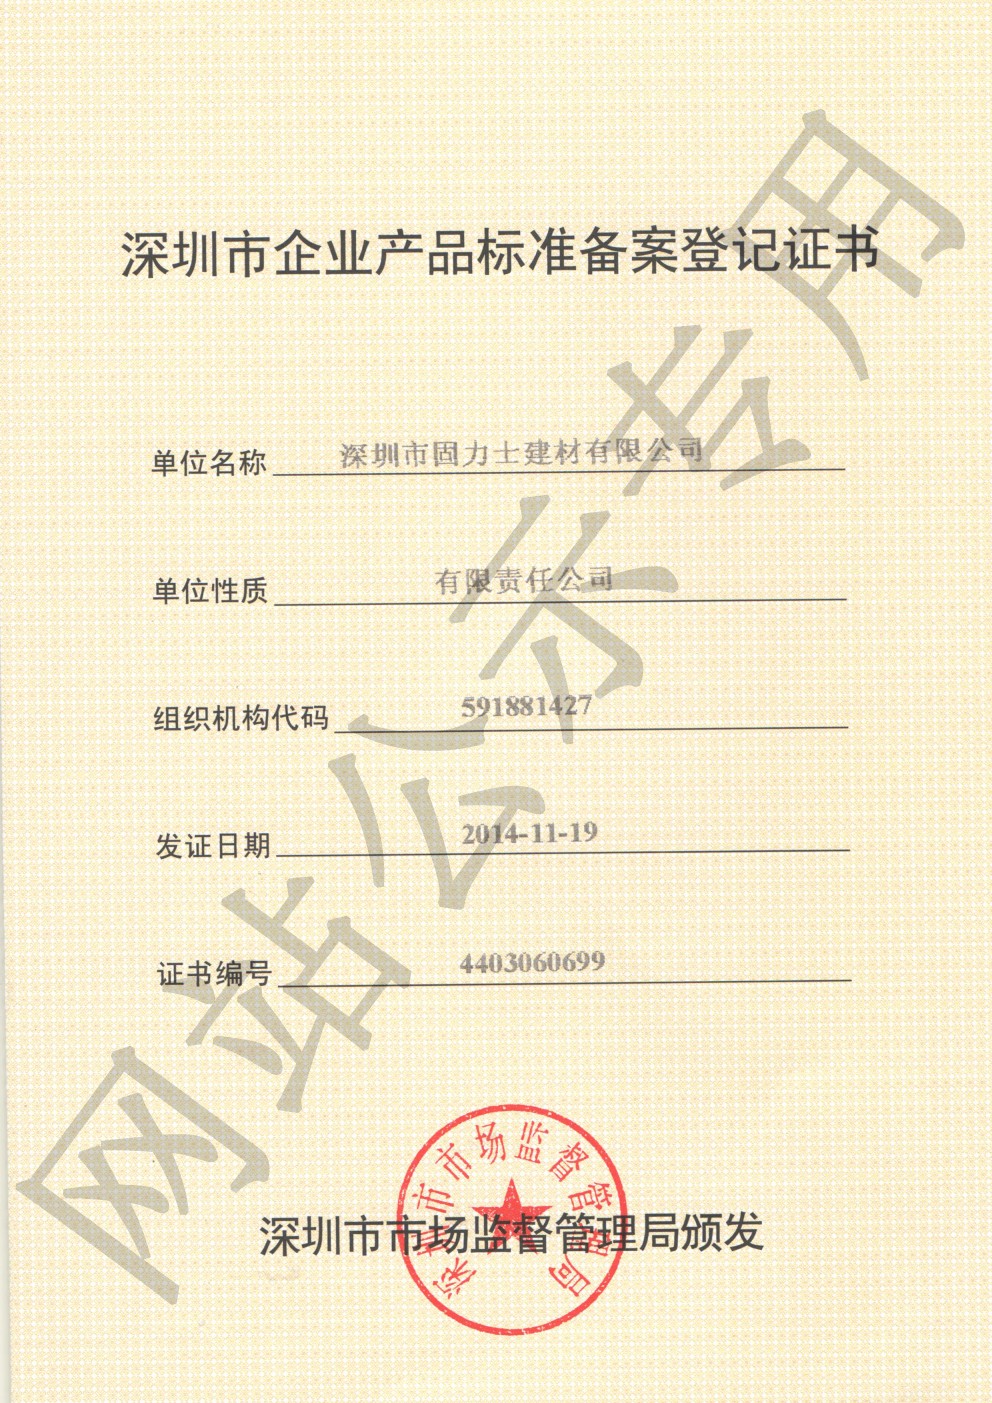 都兰企业产品标准登记证书